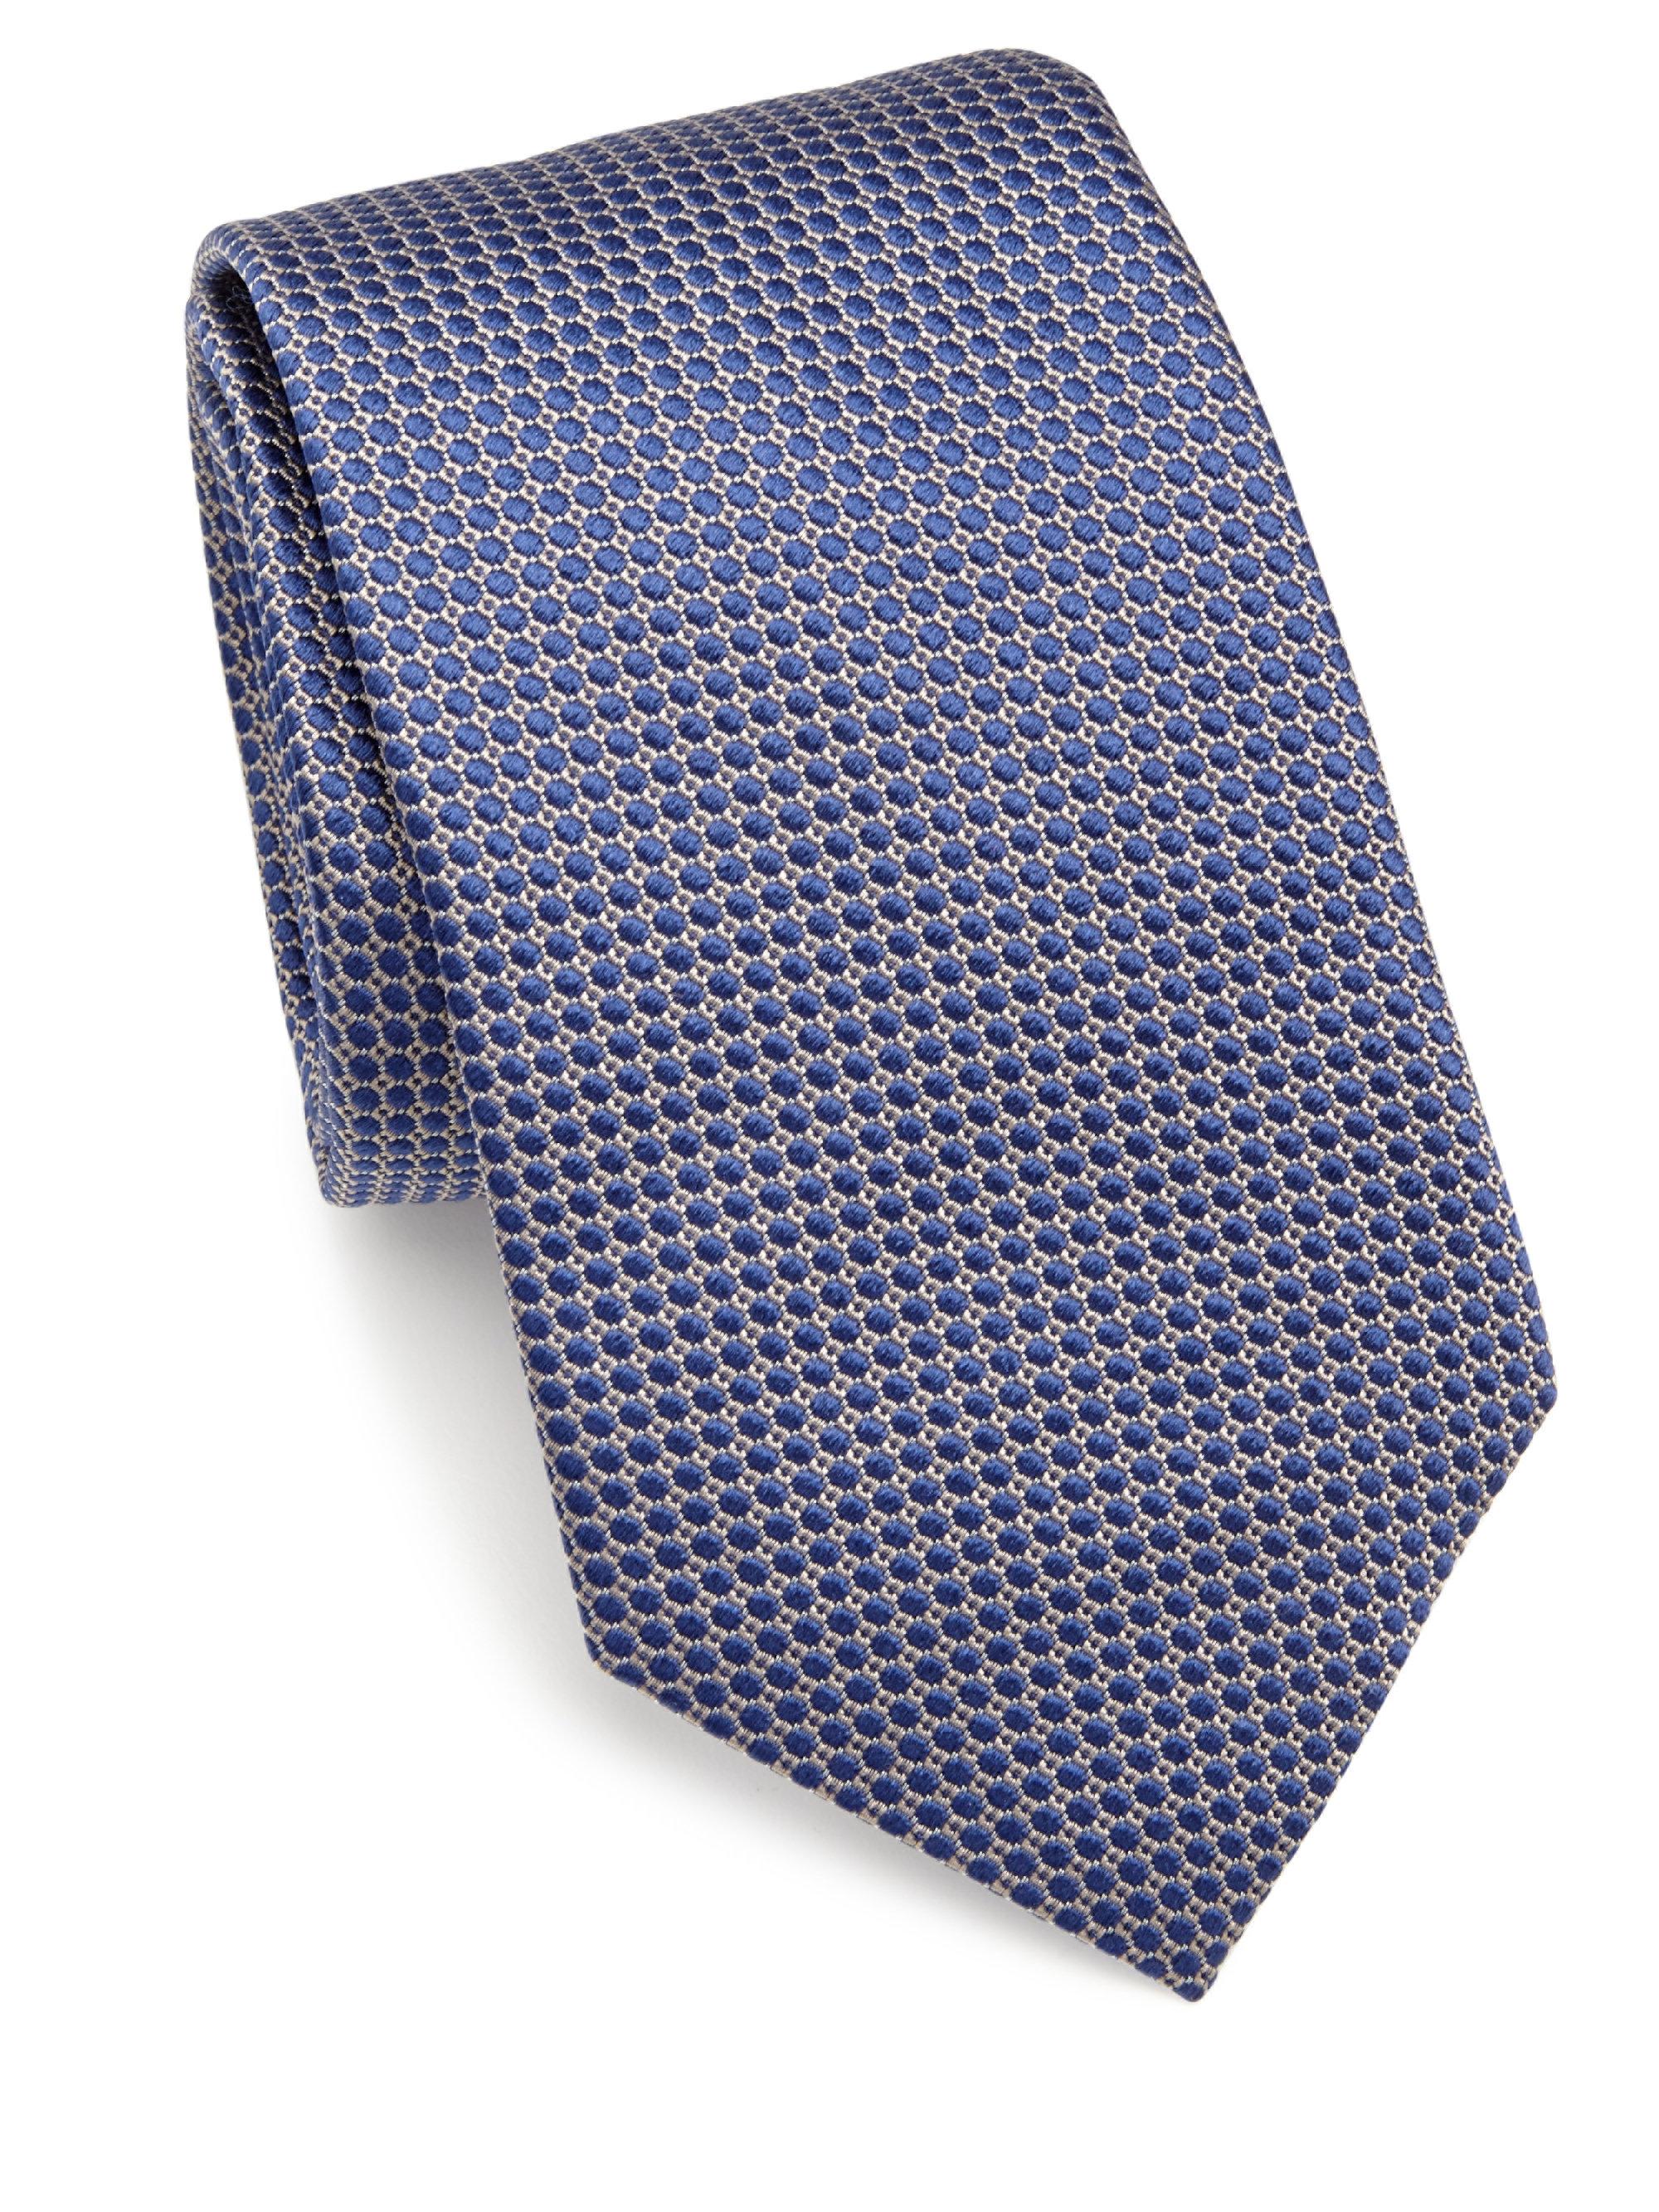 Lyst - Eton Of Sweden Textured Silk Tie in Blue for Men